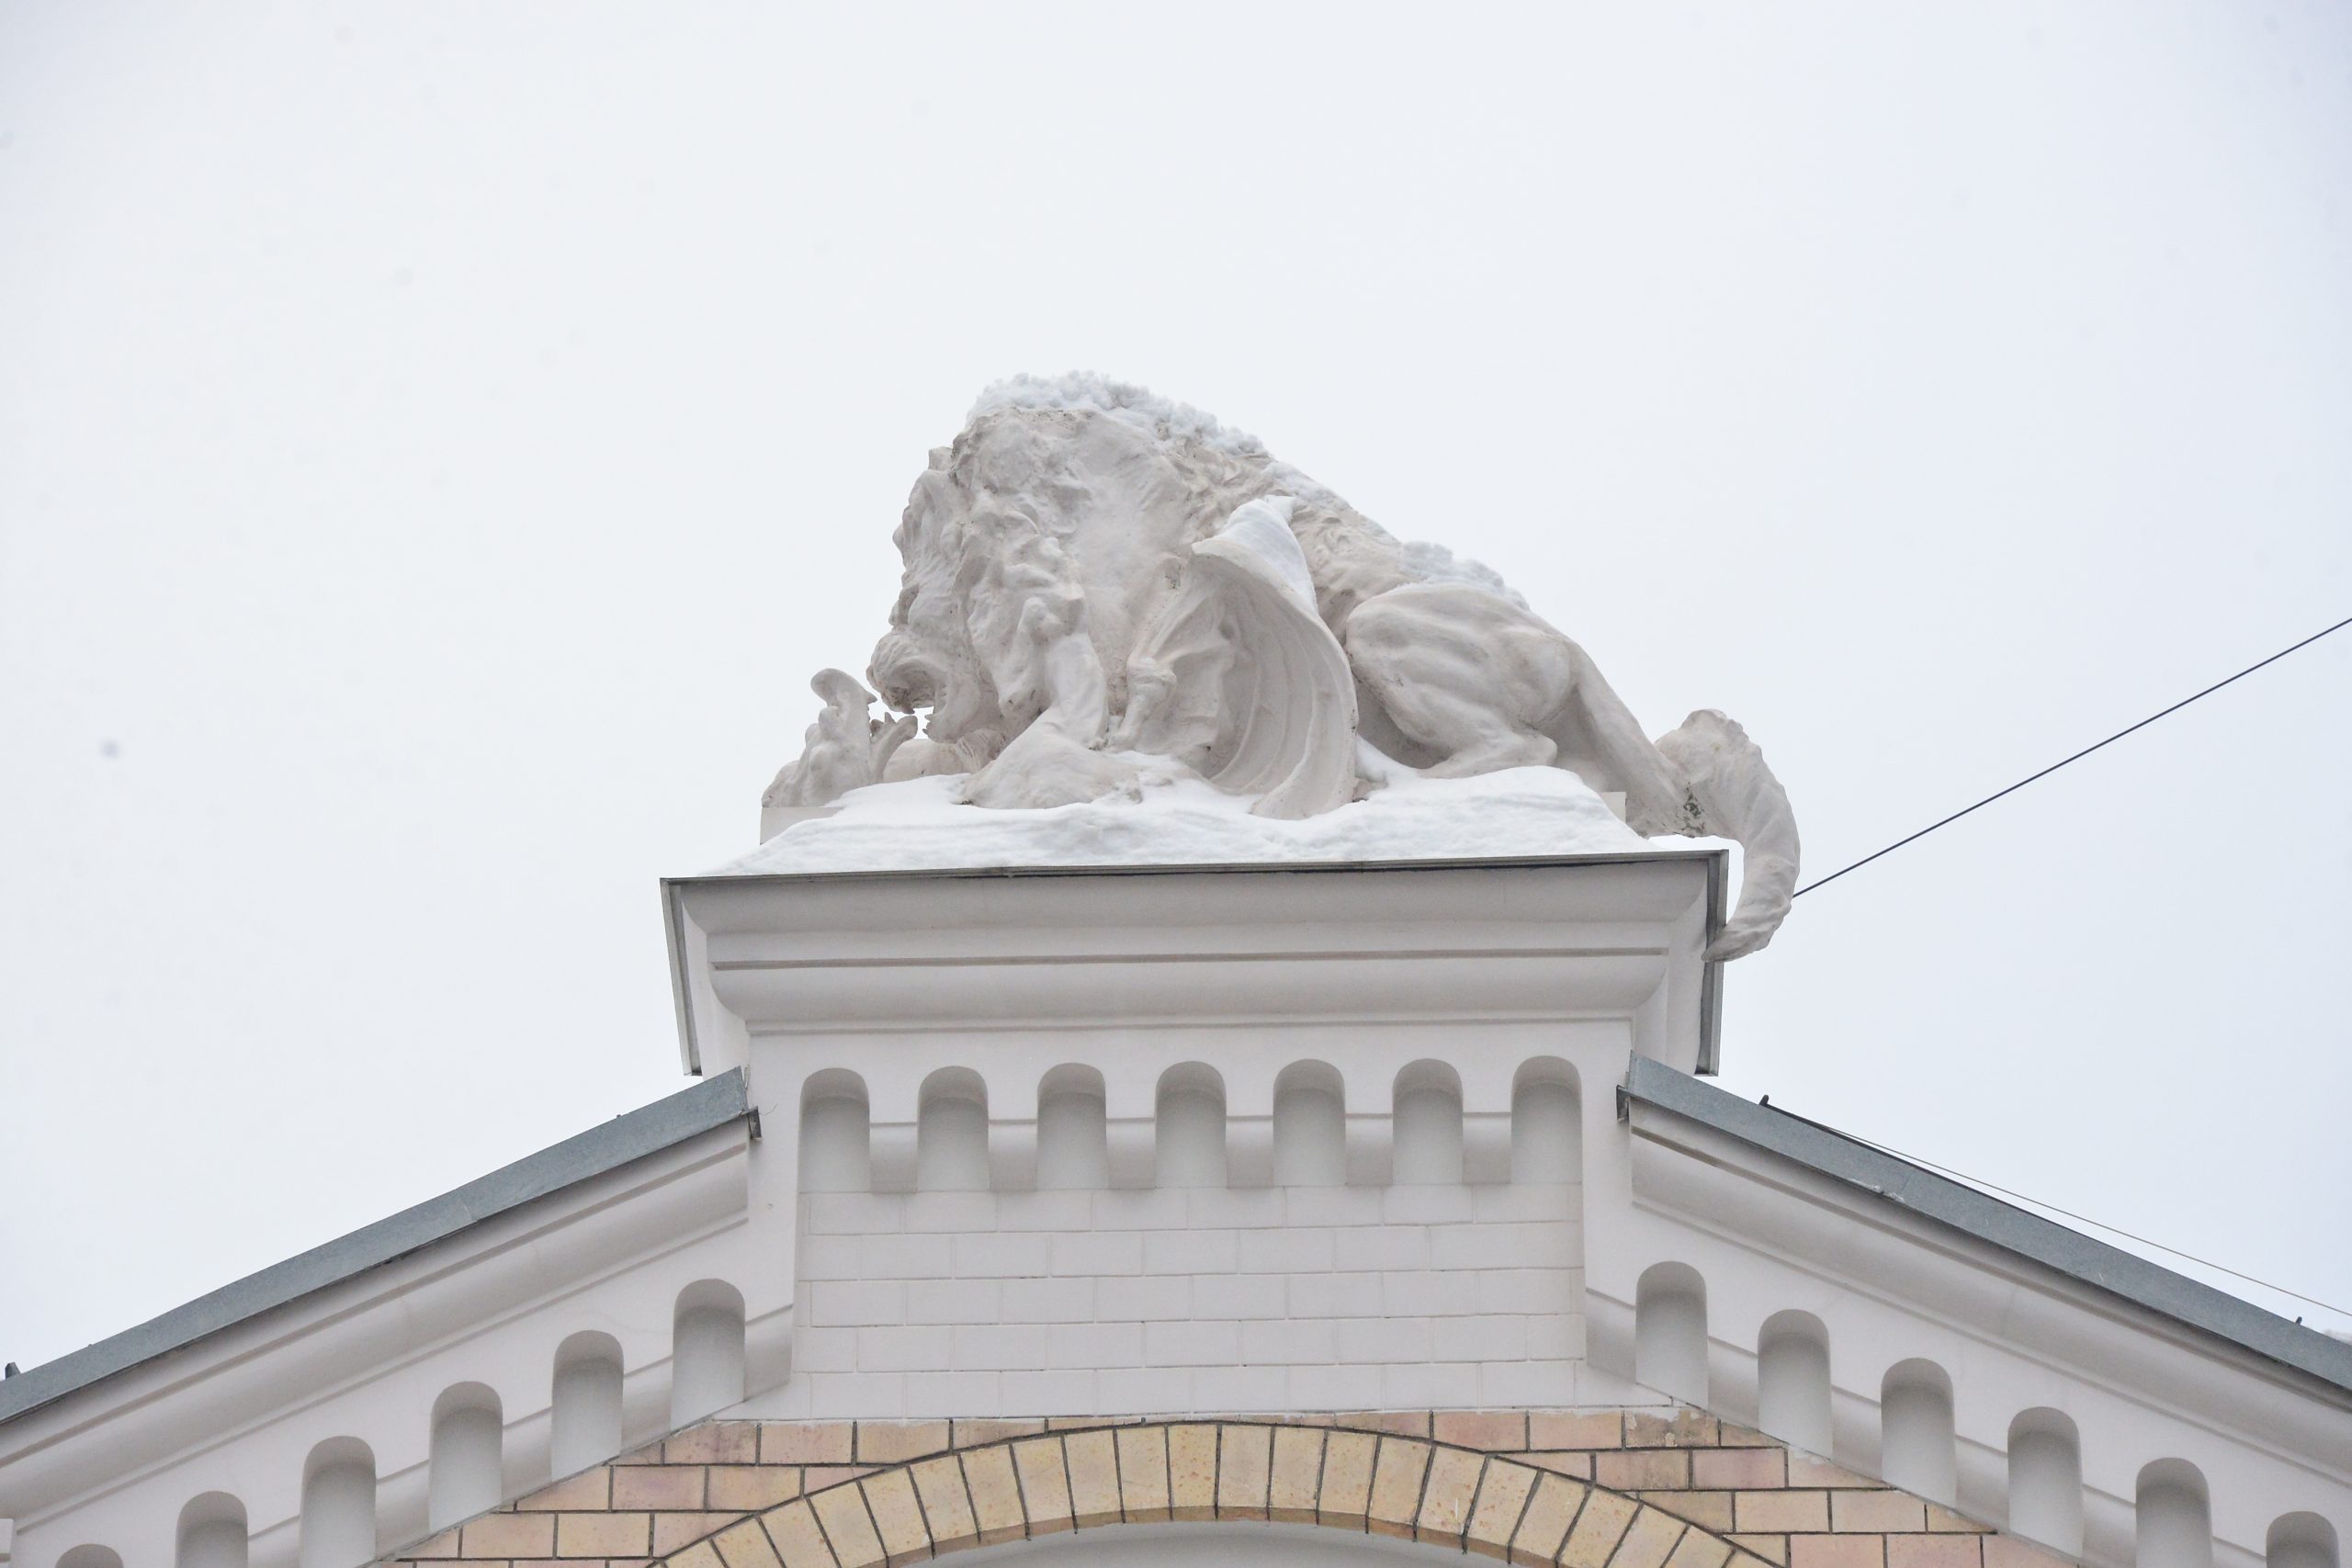 Дом Бойцова на Спиридоновке увенчан скульптурной группой: лев, олицетворяющий добро и благородство, побеждает дракона. Фото: Анна Малакмадзе, «Вечерняя Москва»